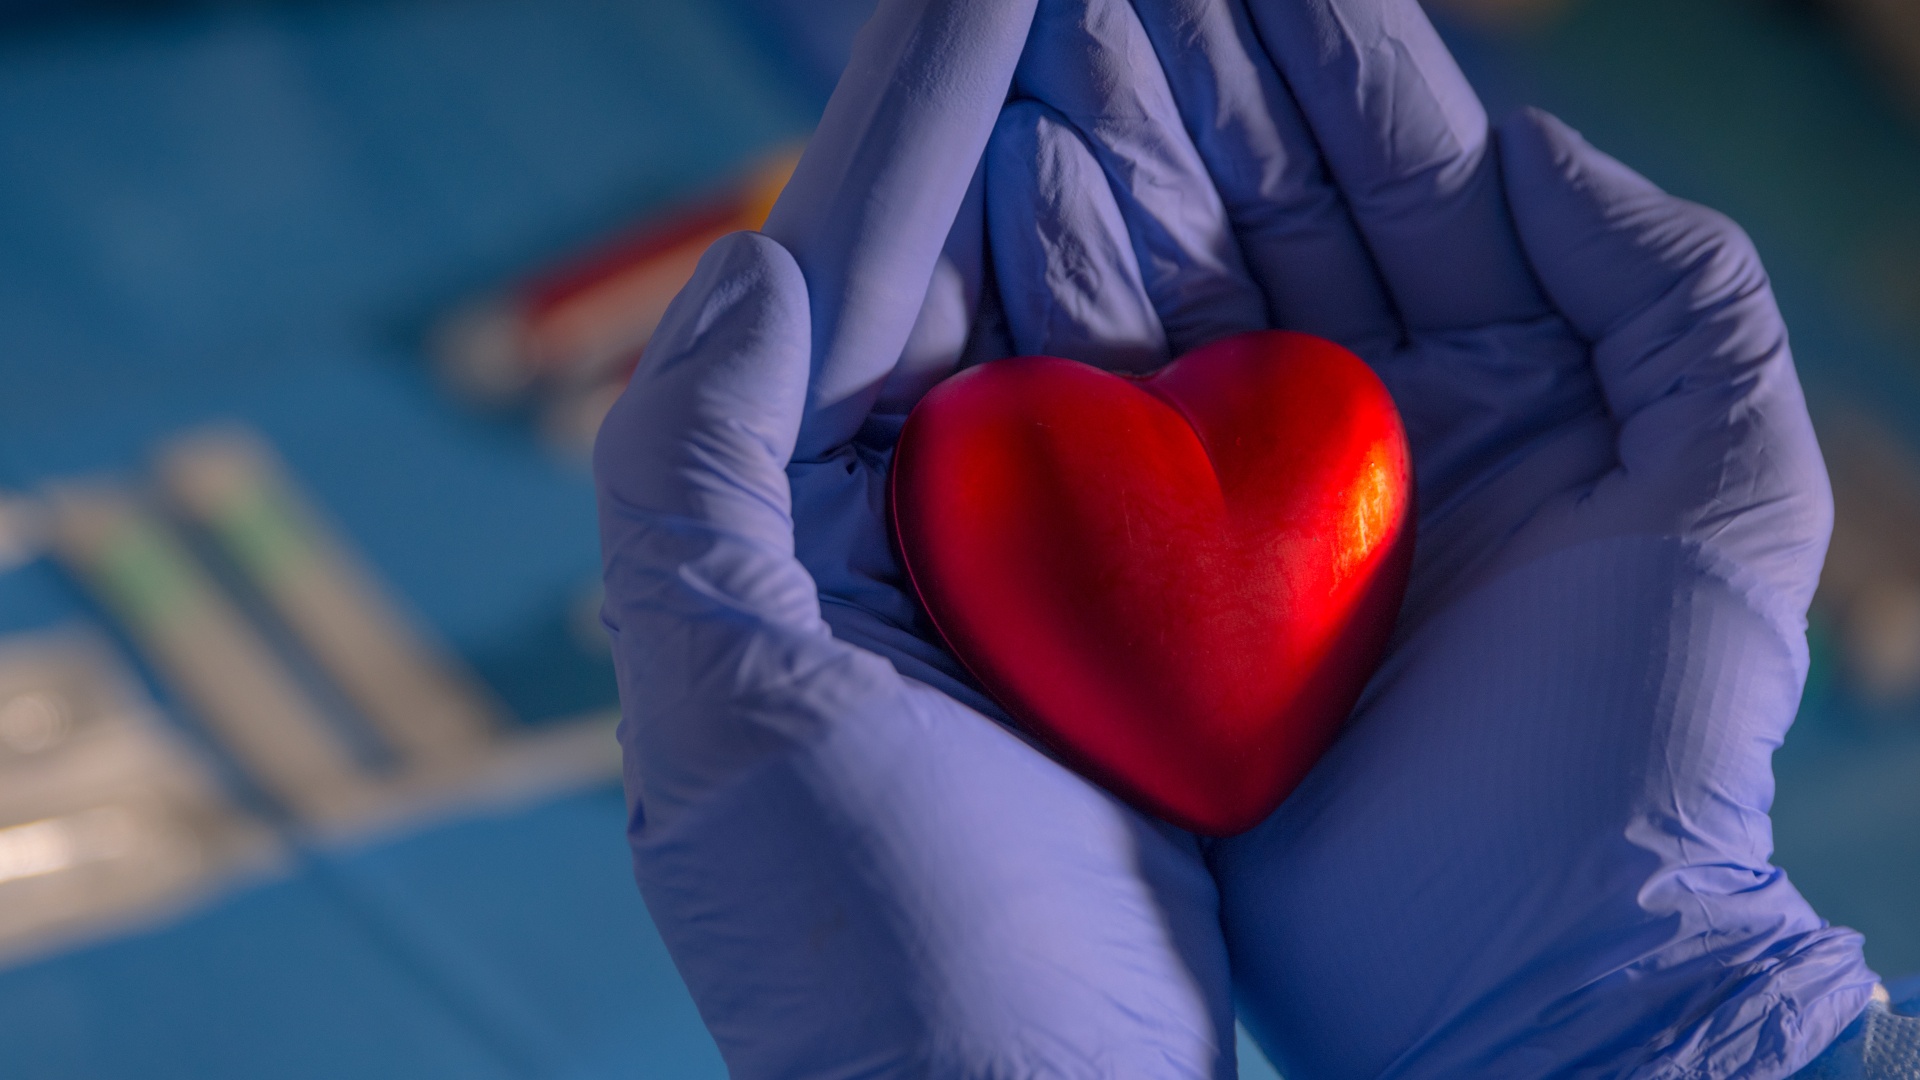 #Wissenschaftler haben ein Roboter-Herz gebaut, dessen Job es ist, nicht richtig zu funktionieren